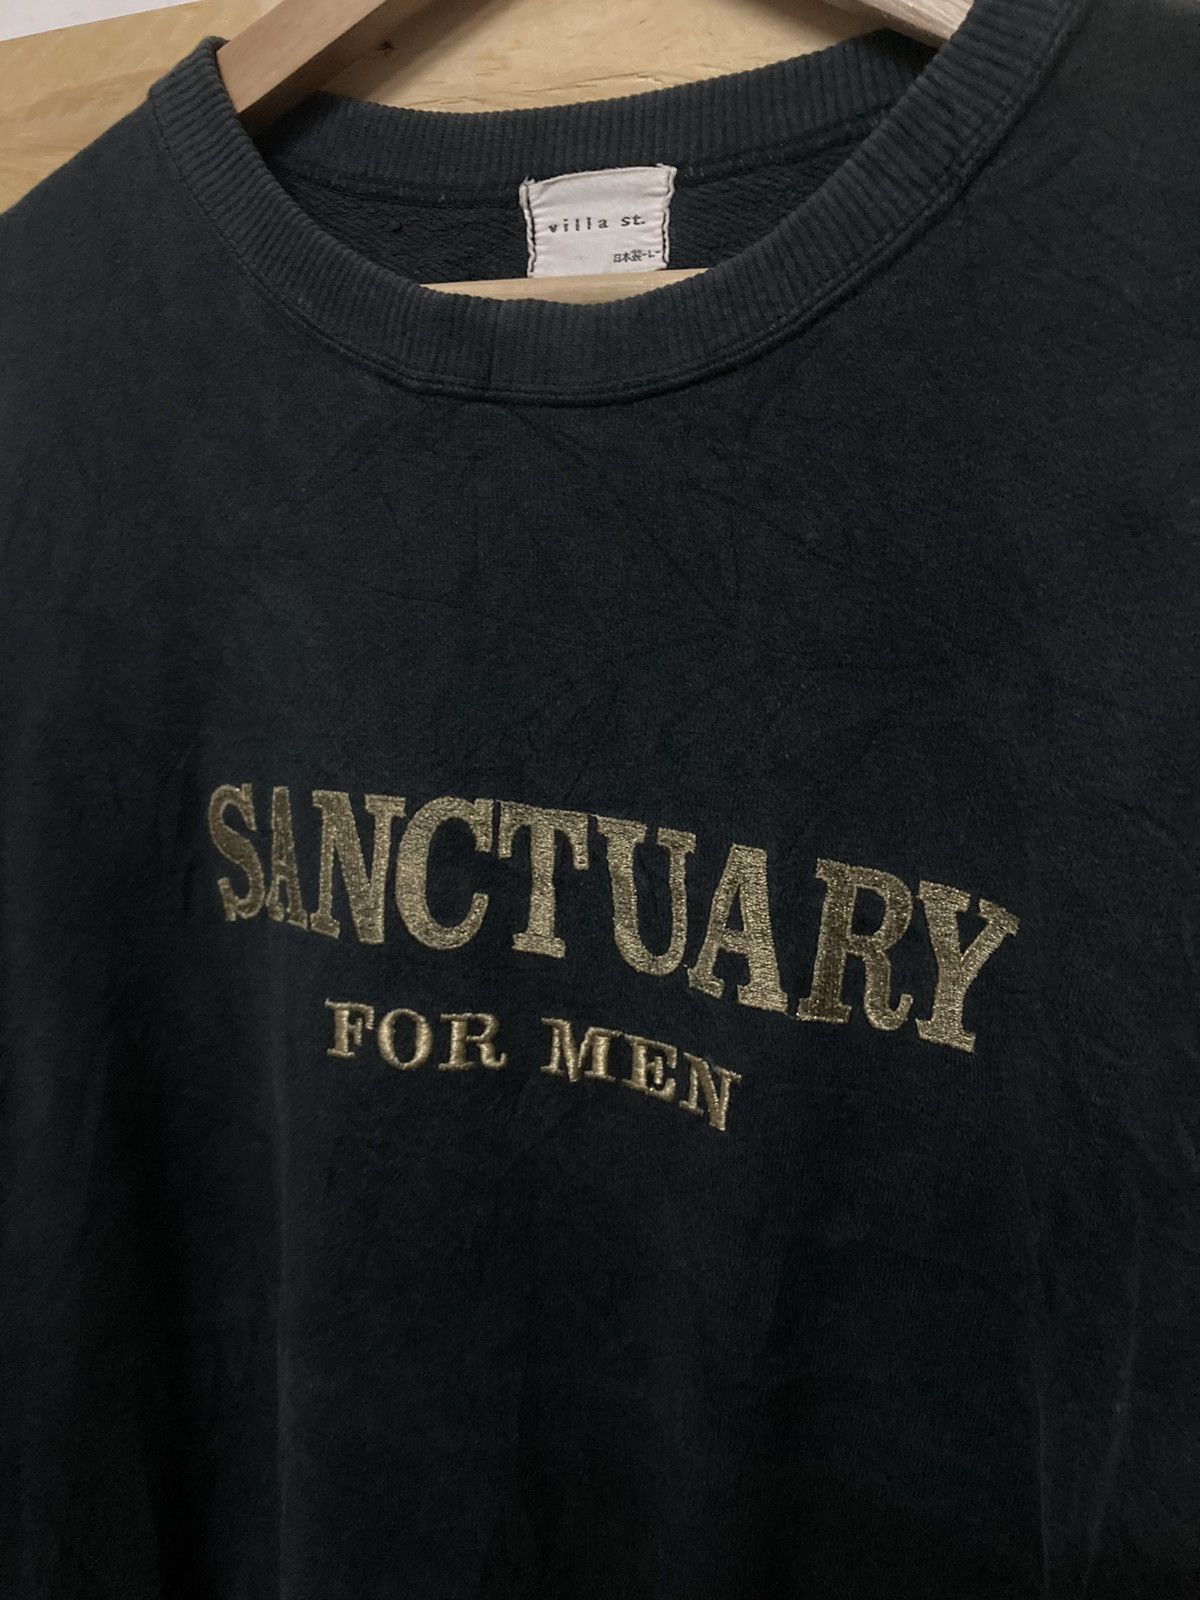 Vintage Sanctuary for Men Crewneck Sweatshirt - 5